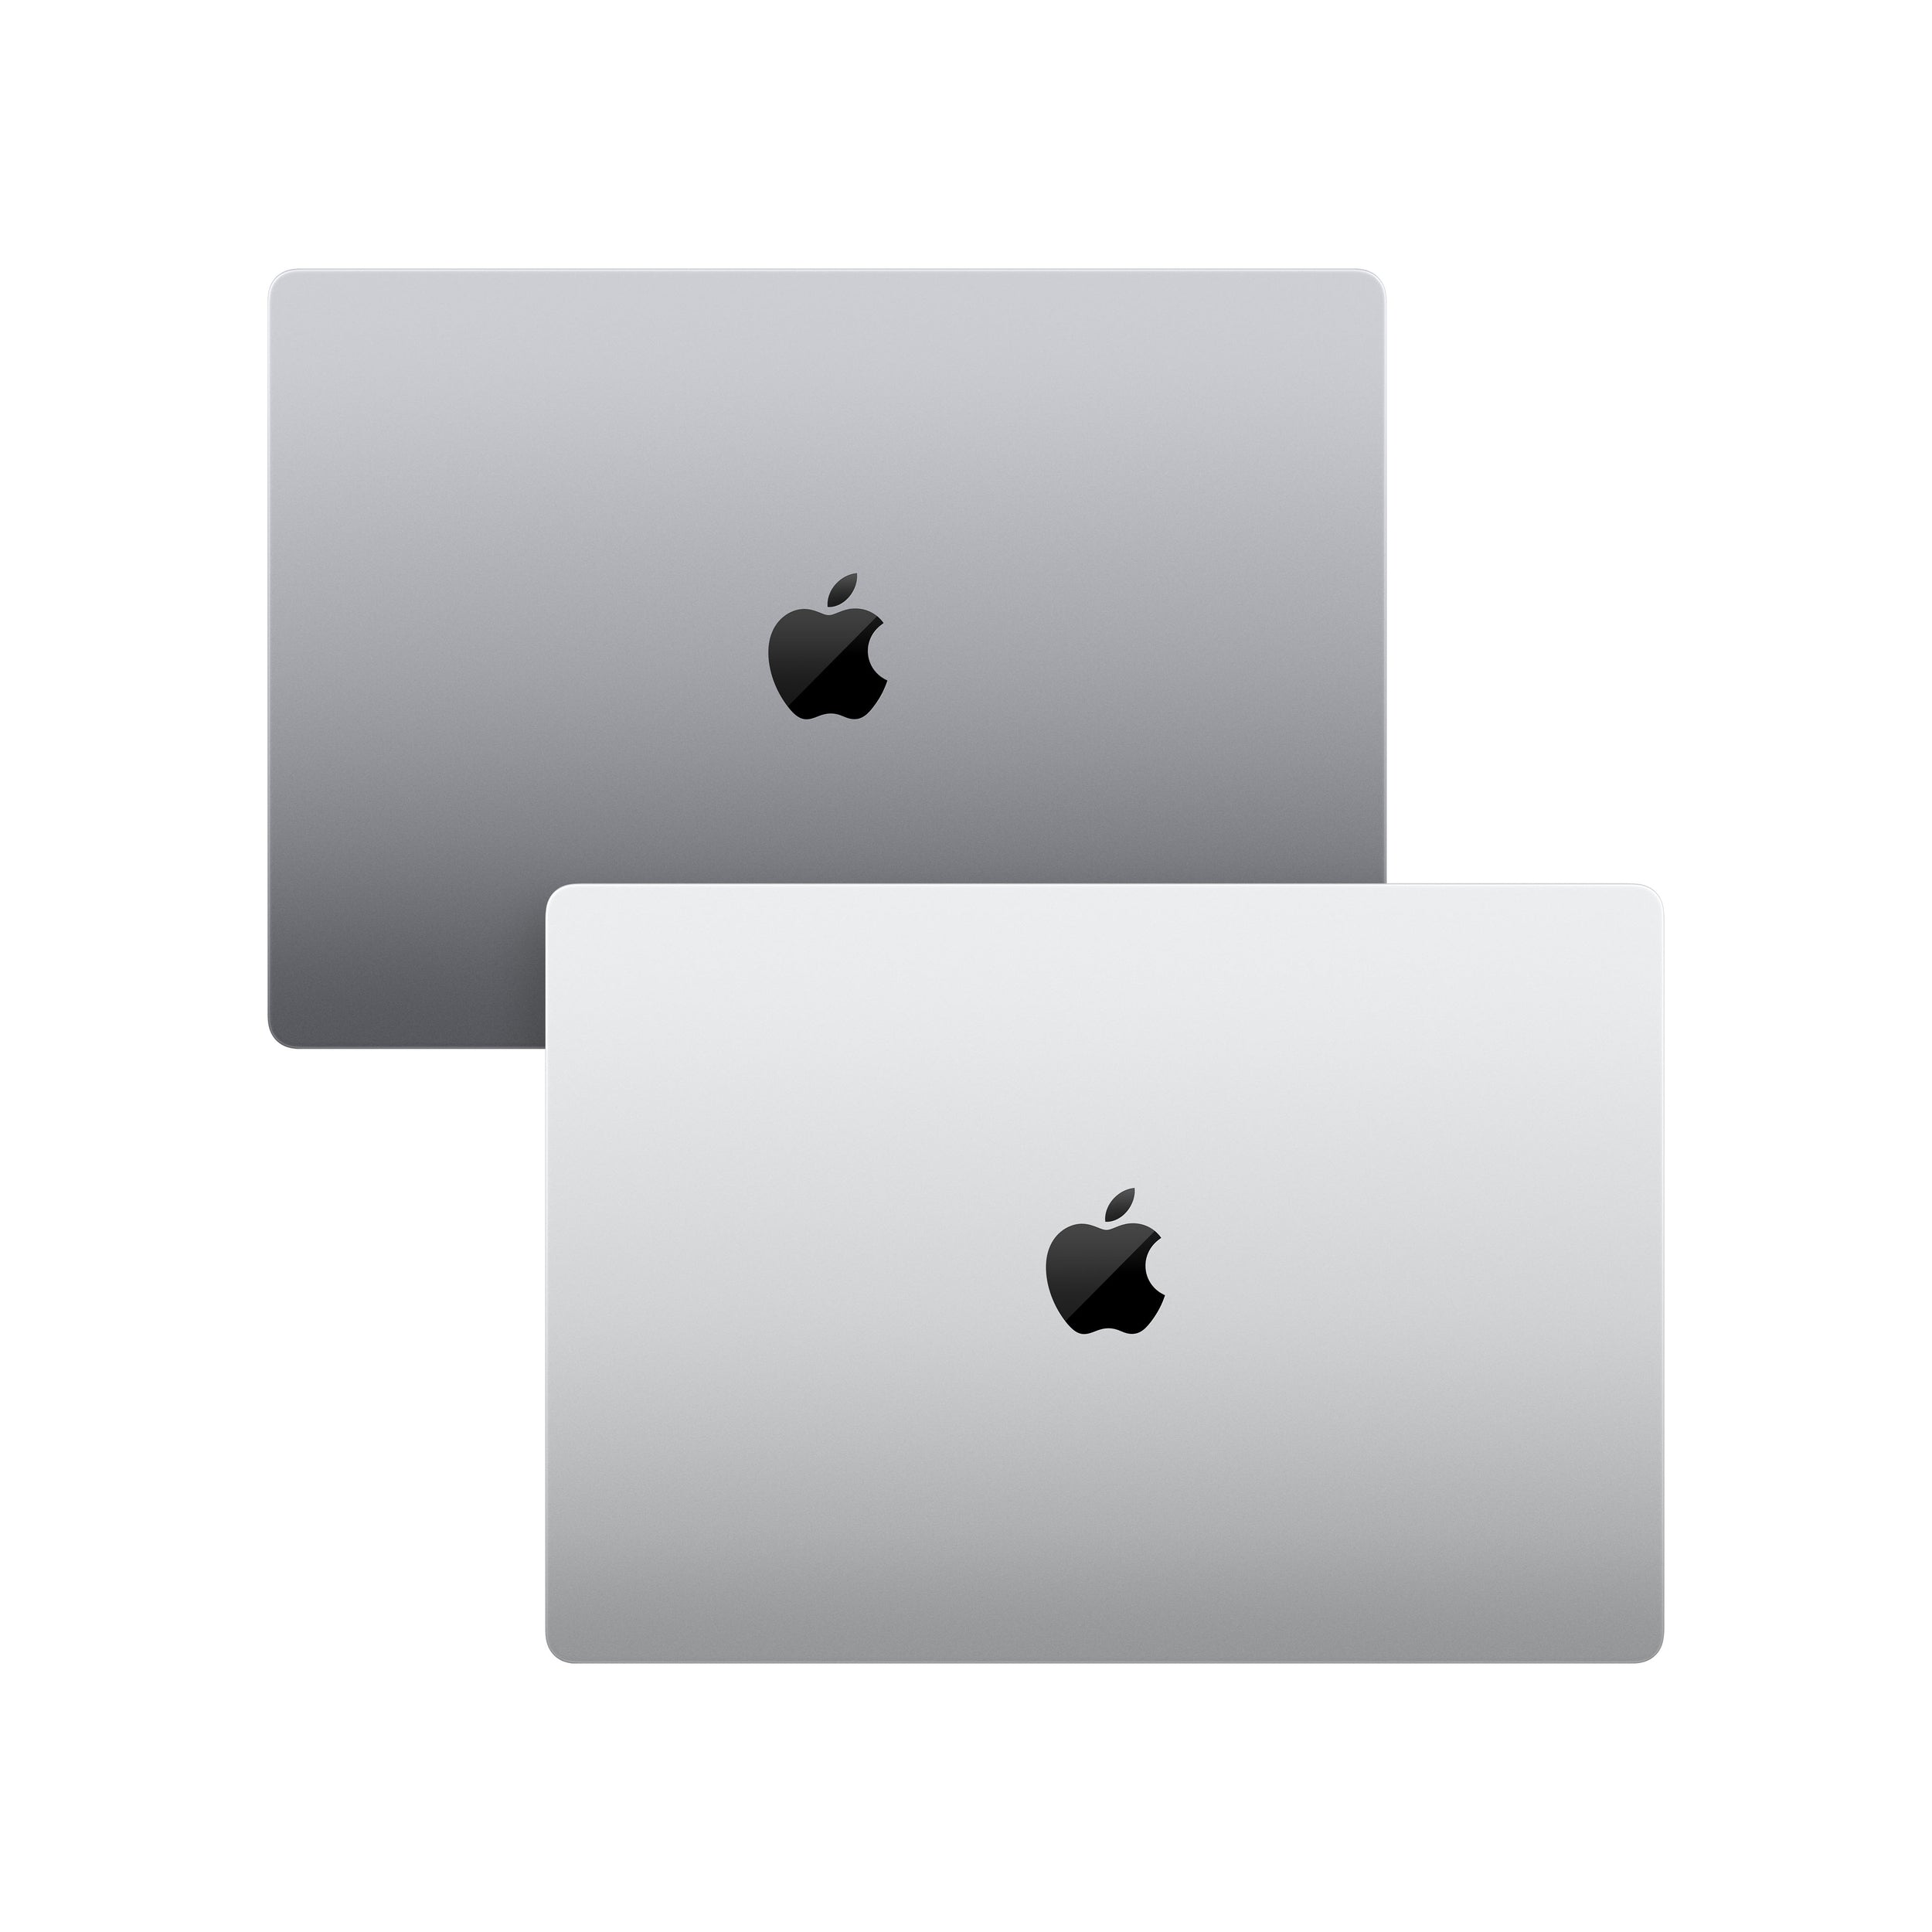 Macbook Pro De 14 Pulgadas/ Chip M1 Pro De Apple Con Cpu 8 Núcleos Y Gpu De 14 Núcleos/ 16Gb Ram/ 512Gb Ssd/ Touch Id/ Gris Espacial